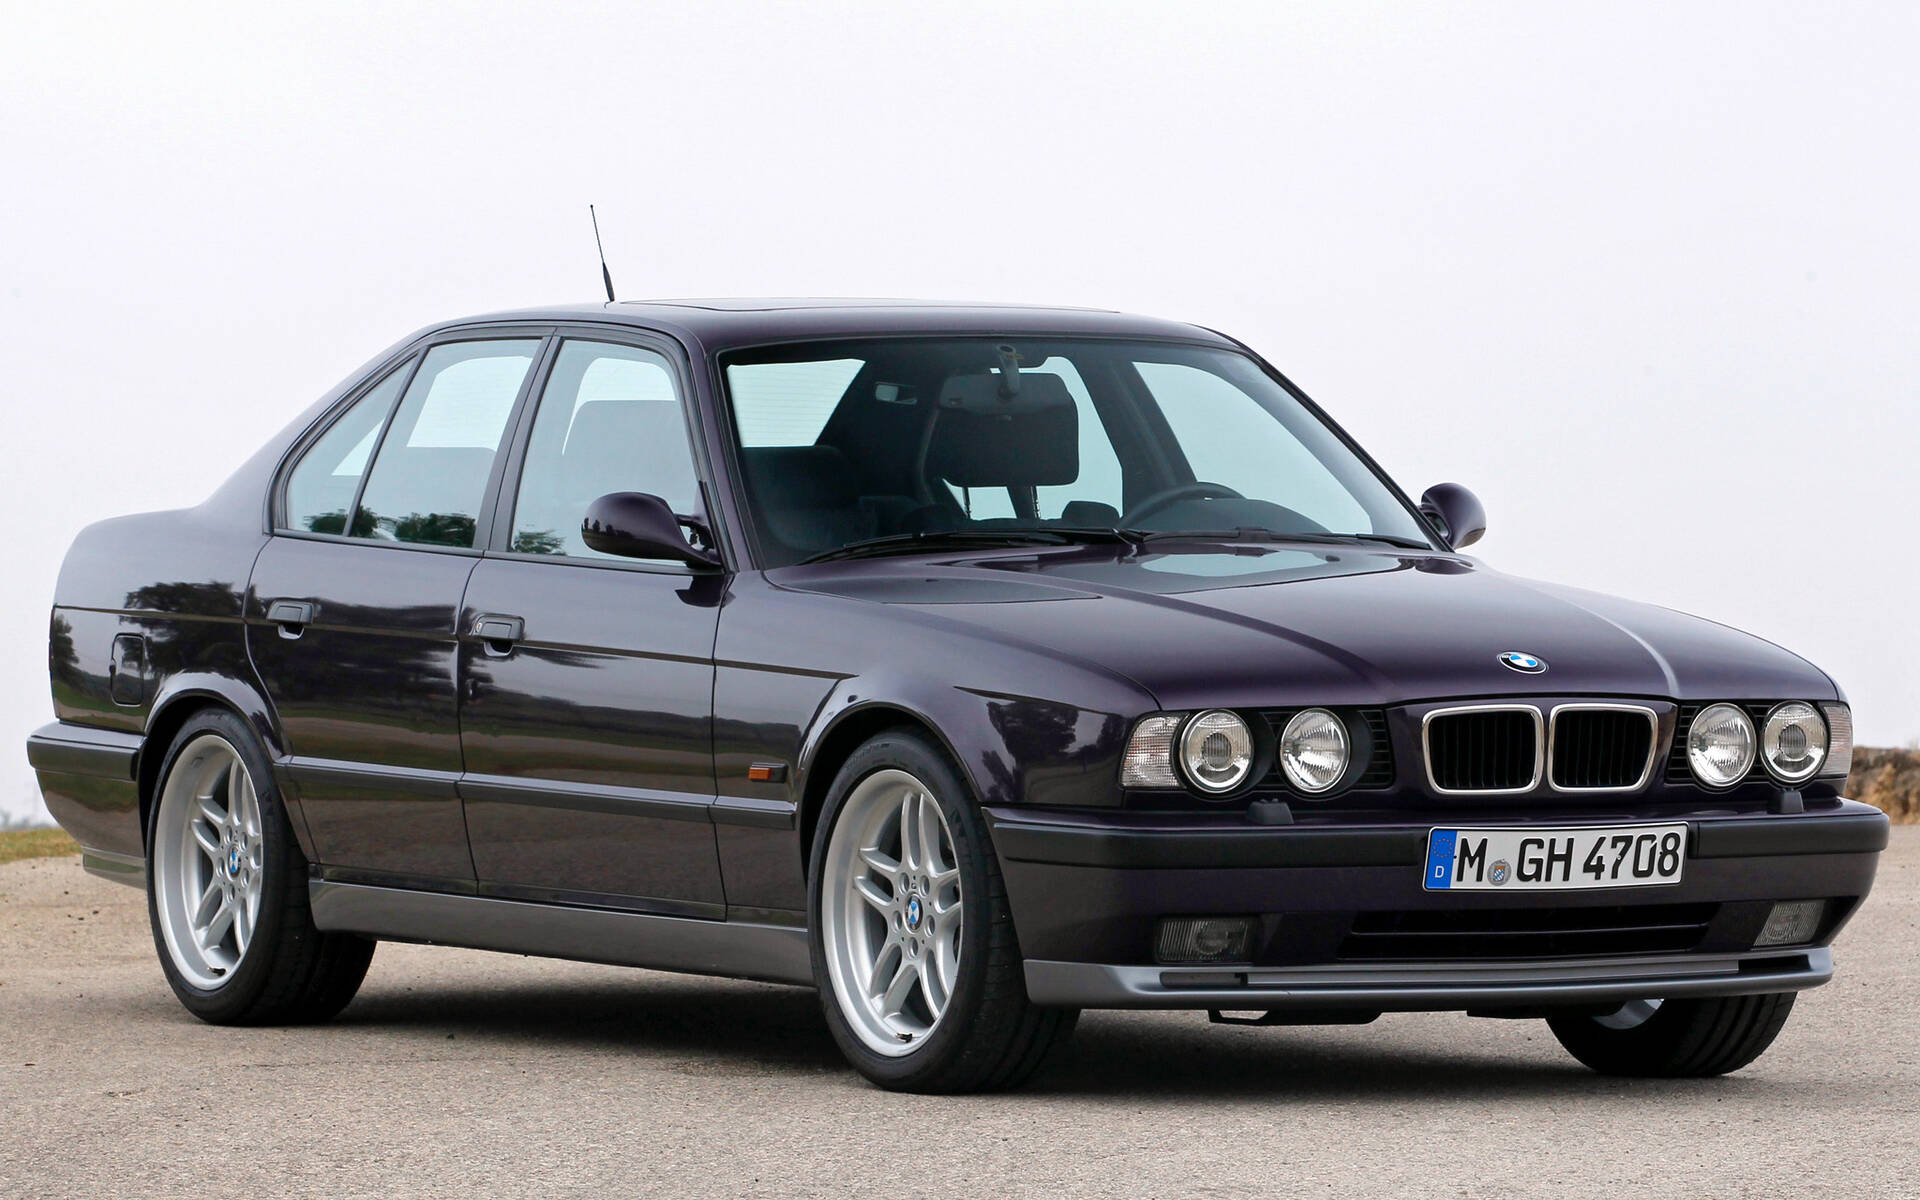 50 ans de voitures BMW M en images 527901-50-ans-de-voitures-bmw-m-en-images